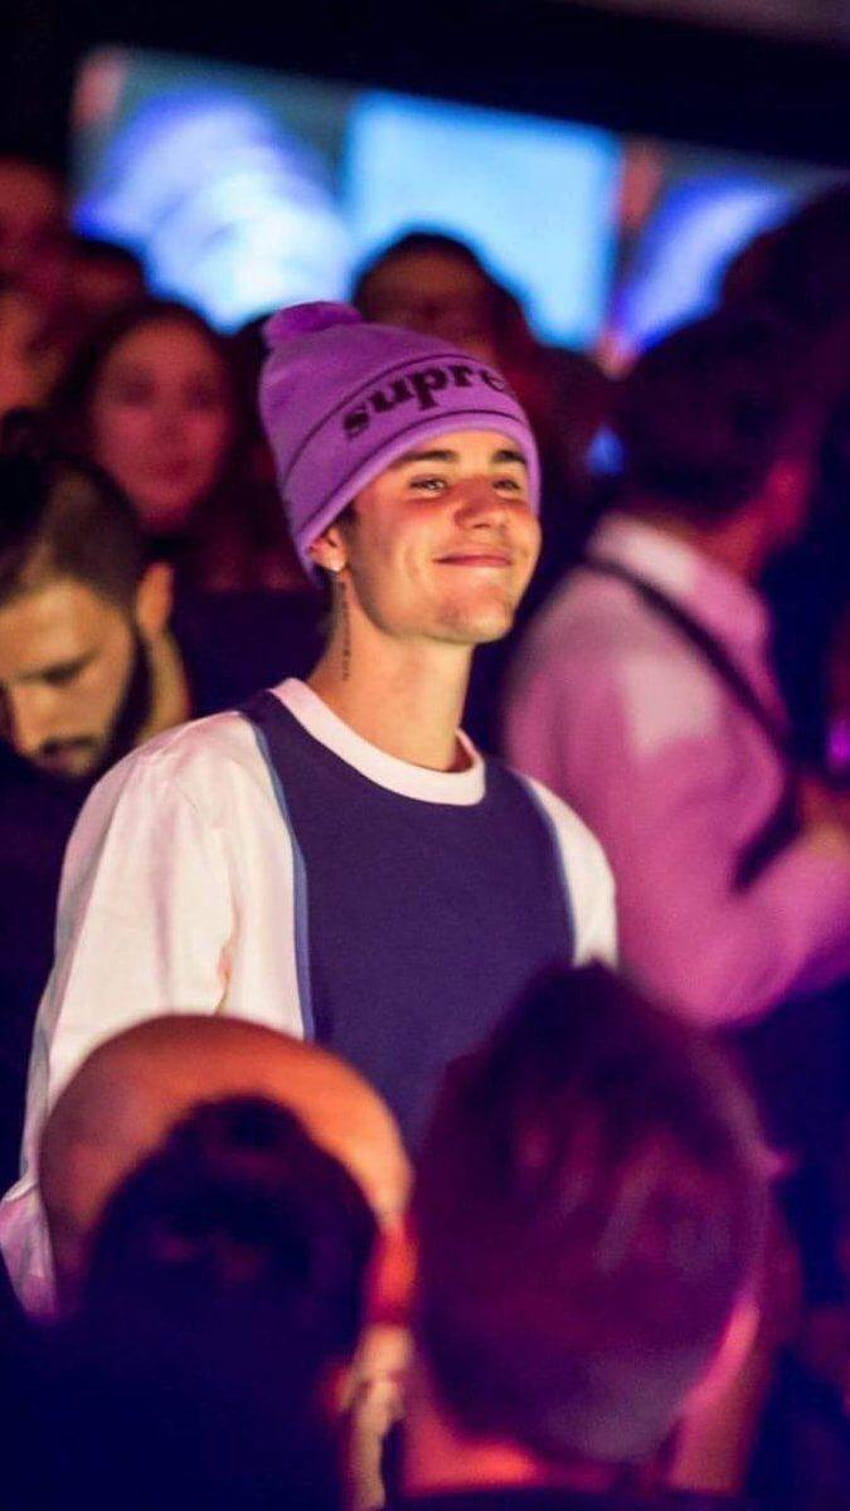 His smile:))) Justin Bieber, aesthetic justin bieber HD phone wallpaper